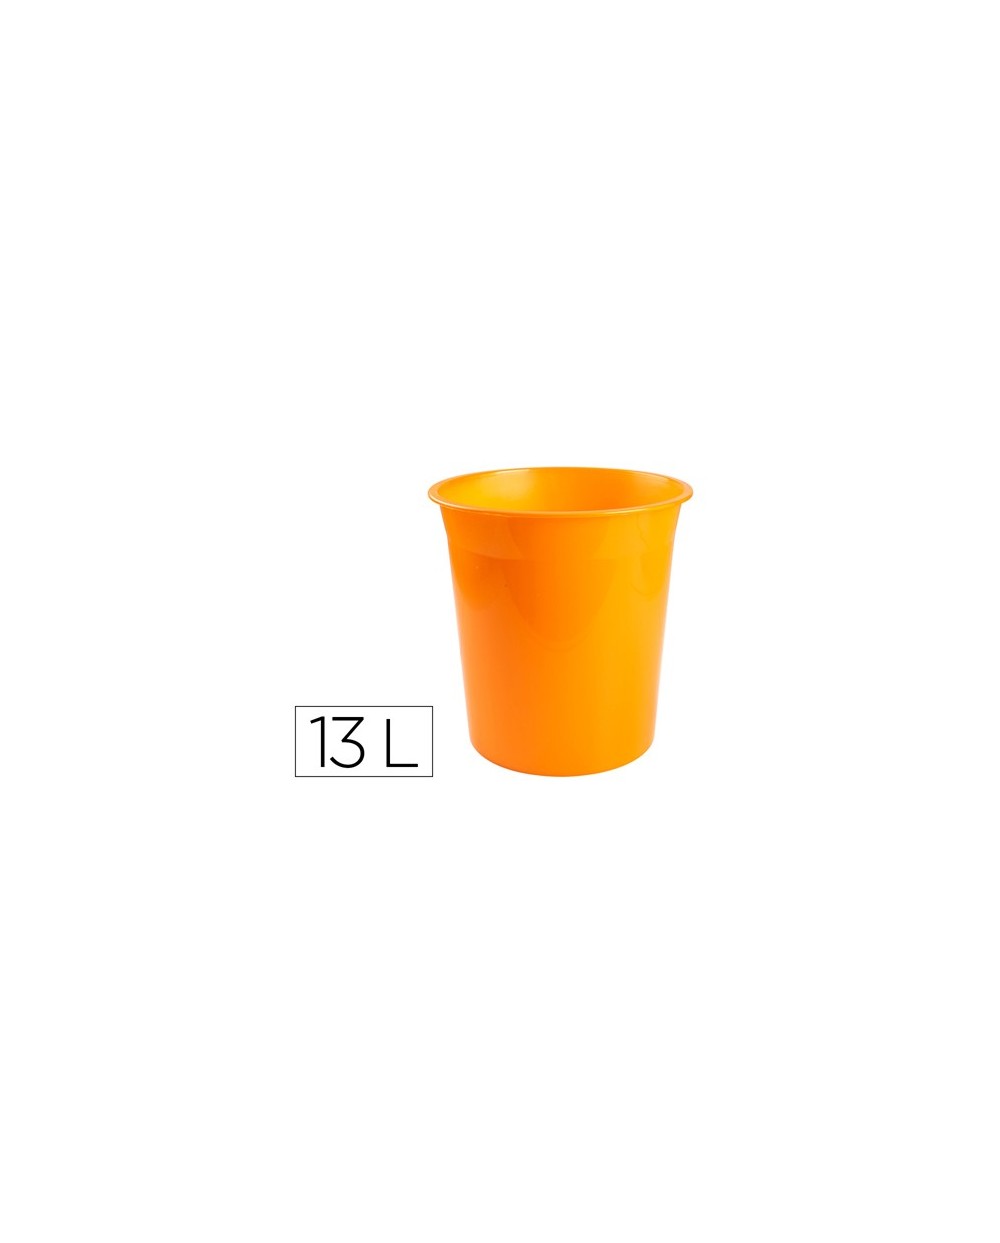 Papelera plastico q connect naranja translucido 13 litros dim 275x285 mm